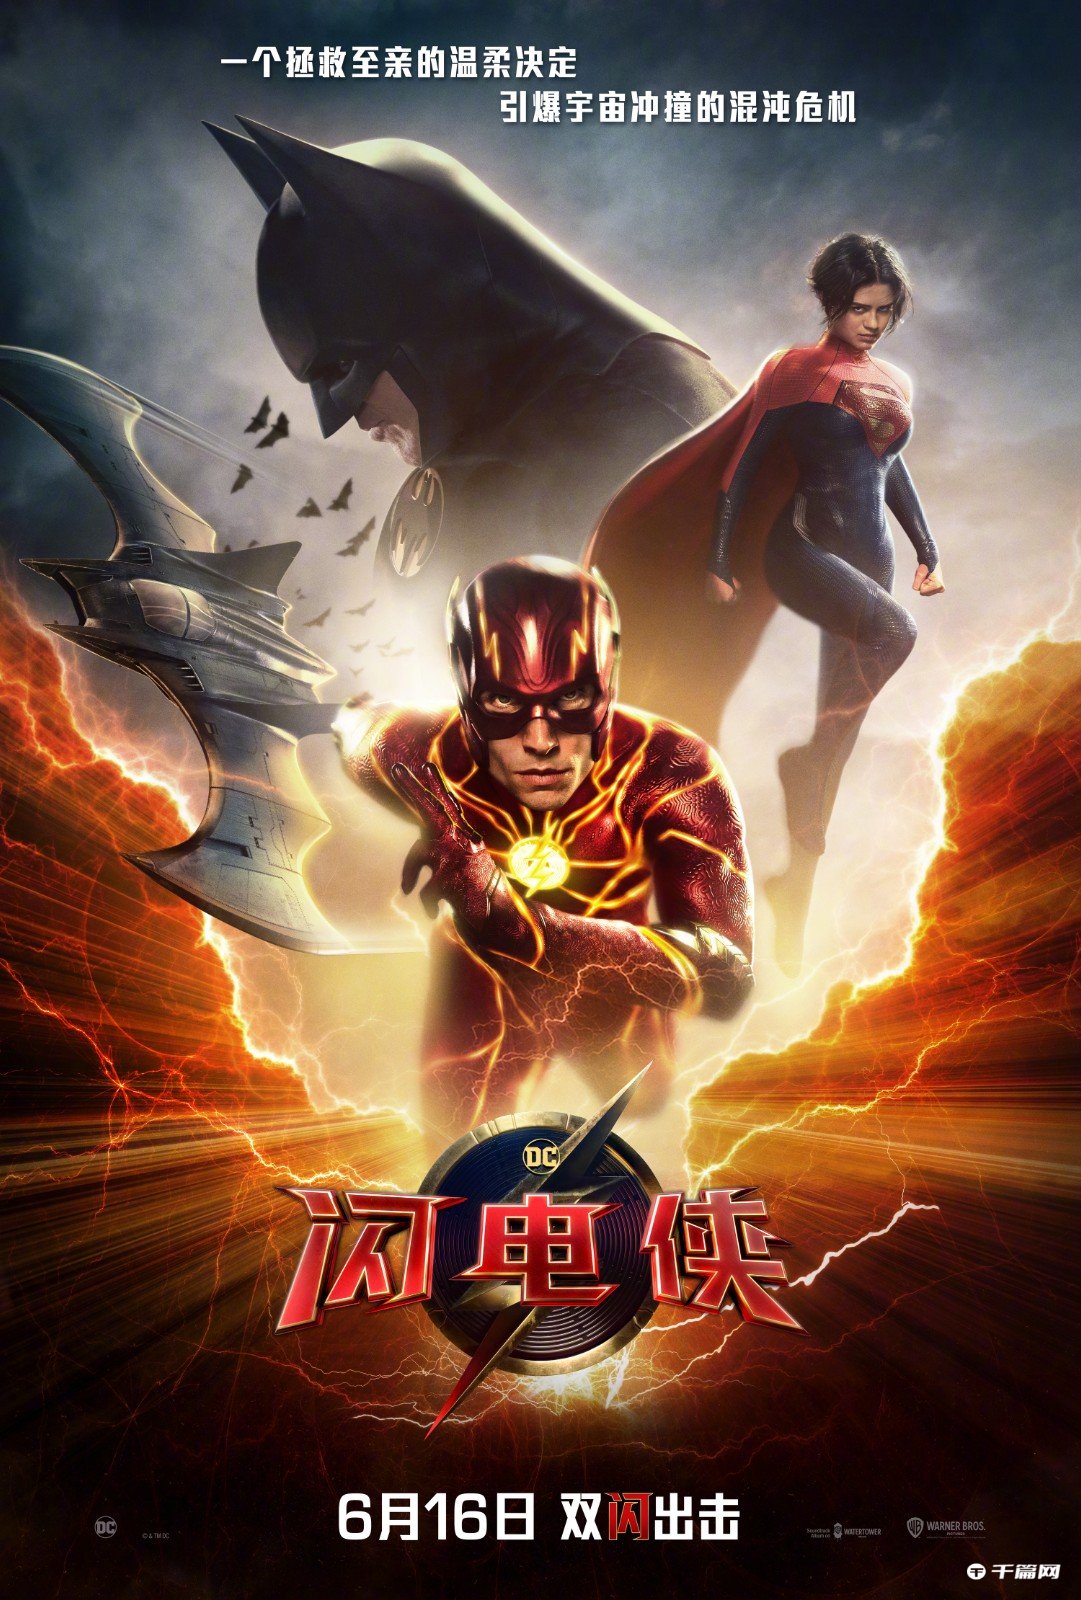 DC超级英雄新片《闪电侠》发布中国独家预告